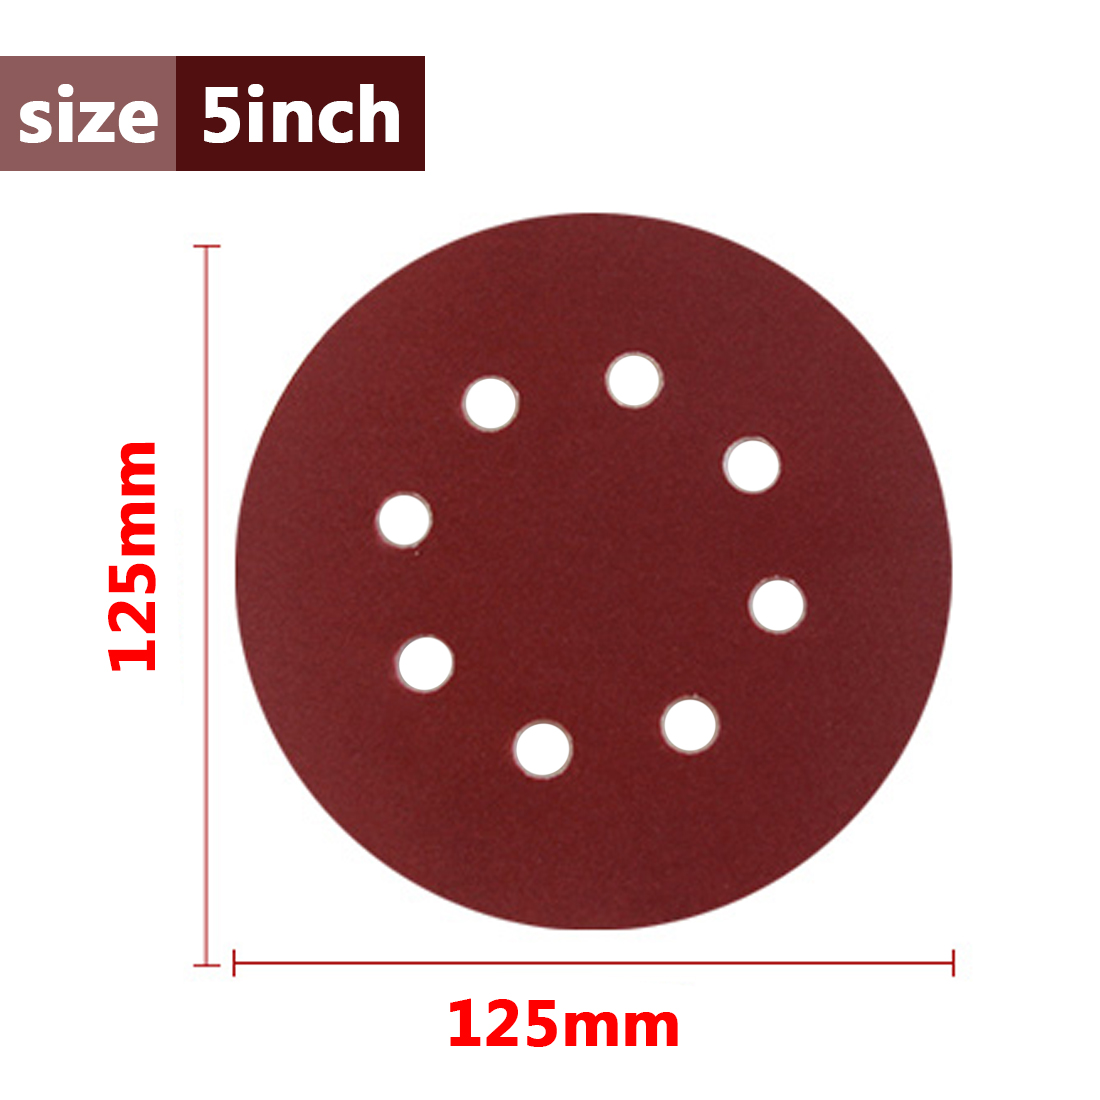 Details about   125mm 5 inch Sanding Discs 40-2000 Grit for Orbital Sander Loop Sandpaper F1 